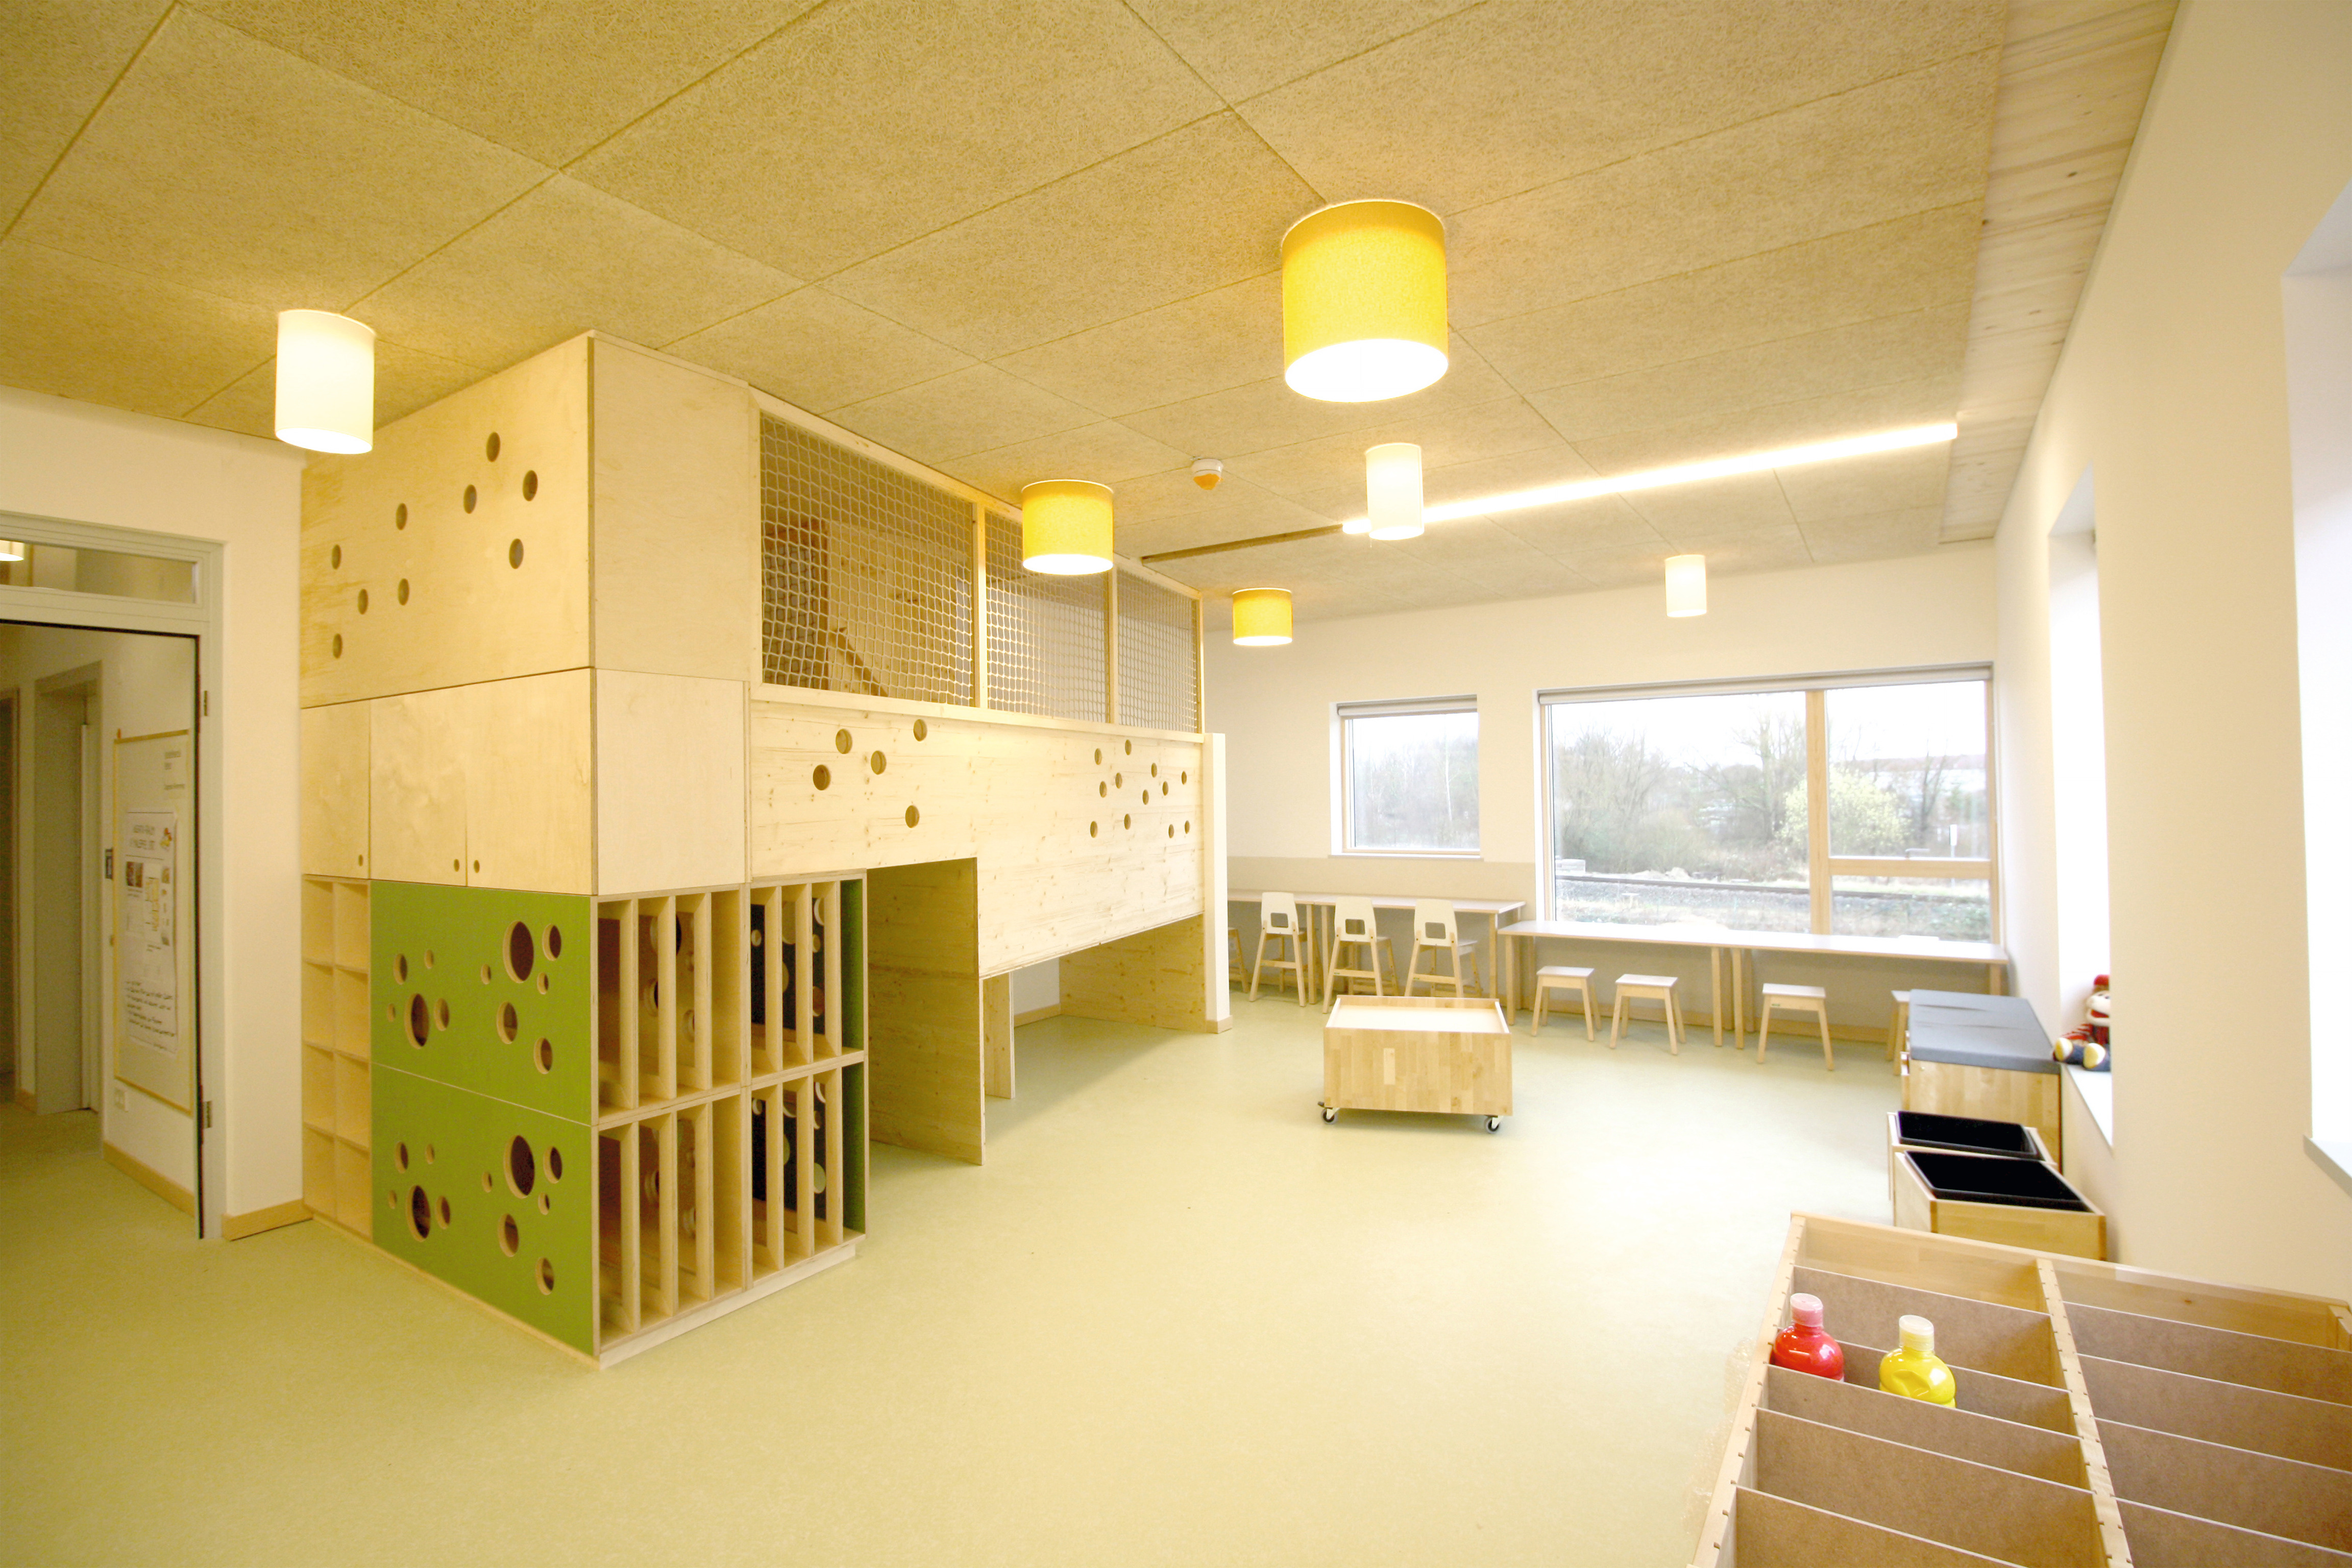 Die Gestaltung der Innenräumen mit Holz sorgt für eine helle und freundliche Atmosphäre. © FreiOrt Architekten